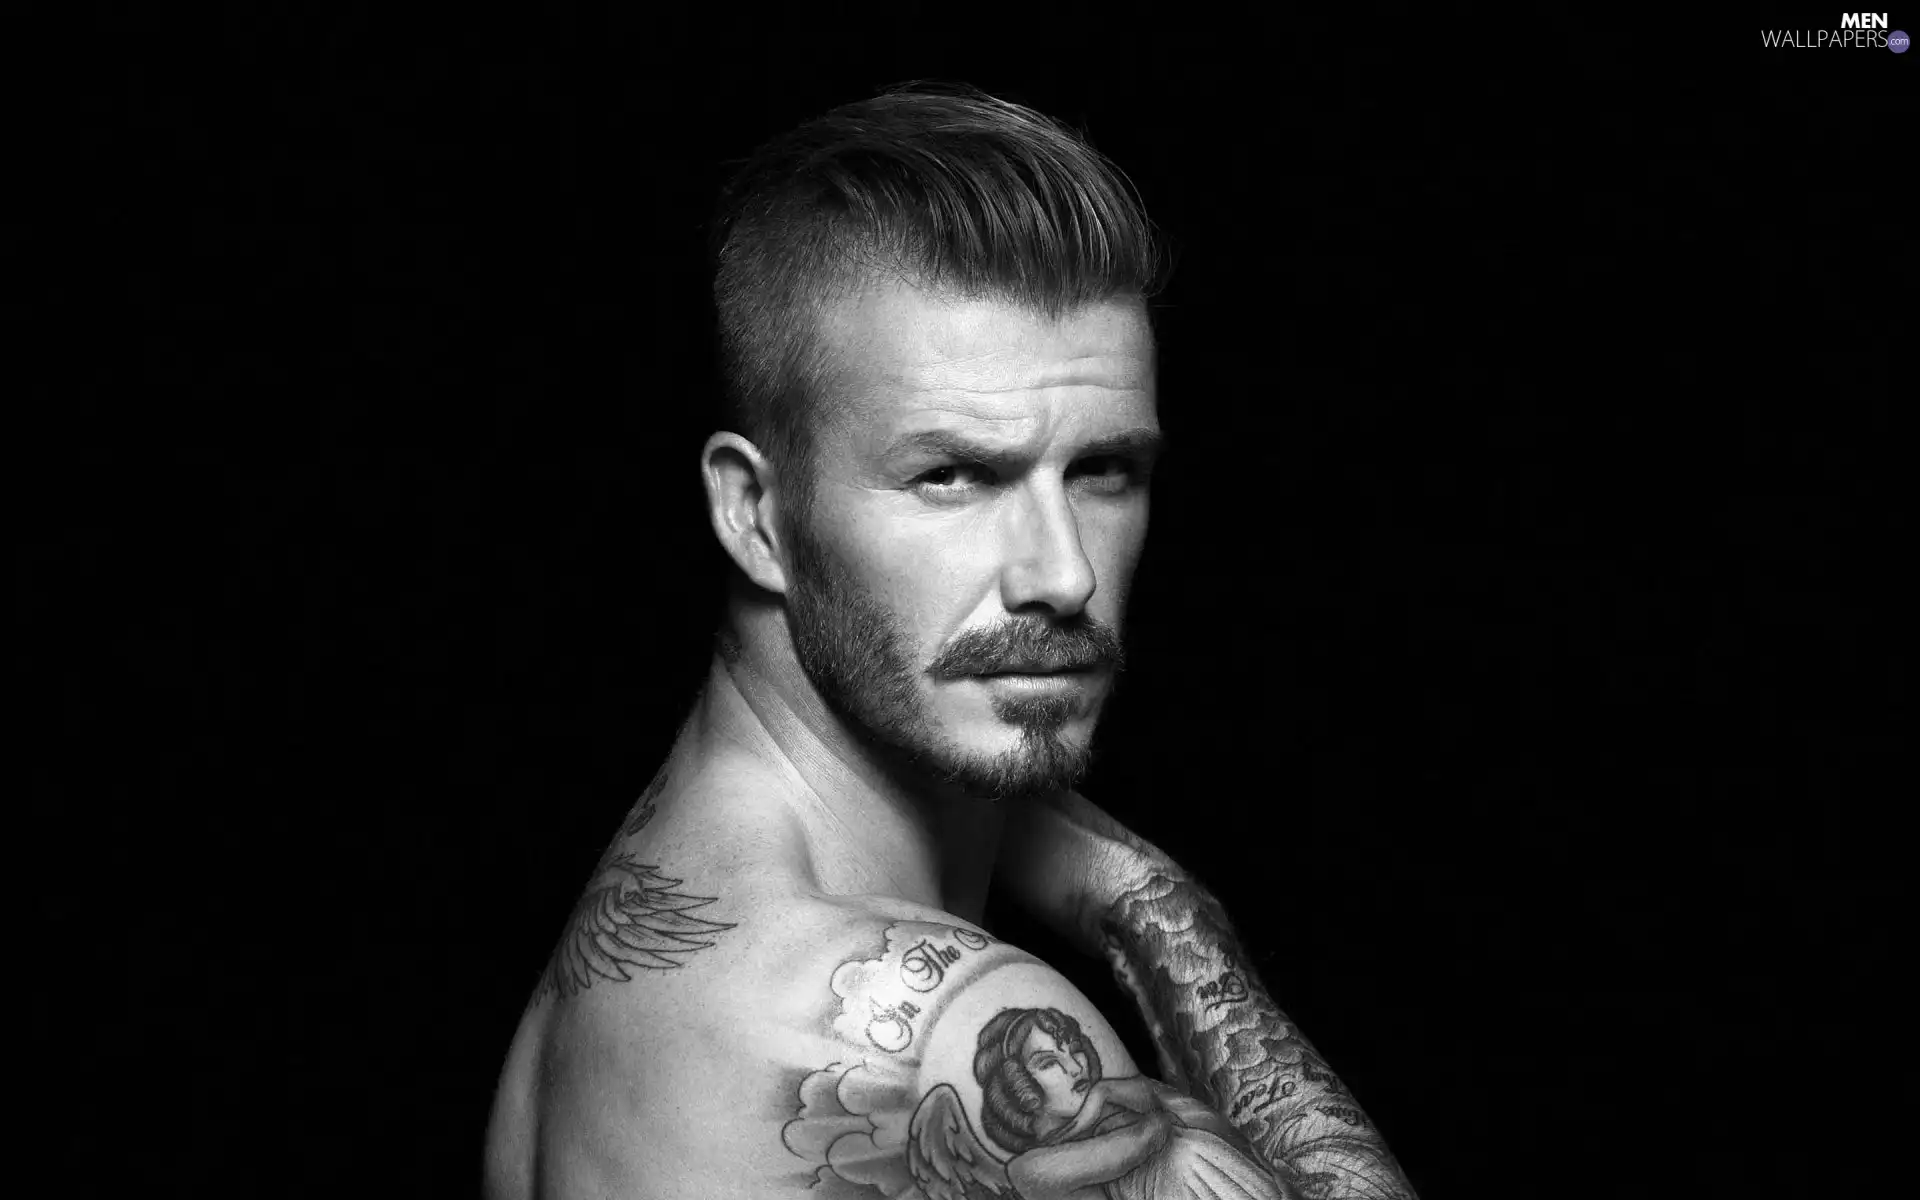 Tattoo, David Beckham, footballer